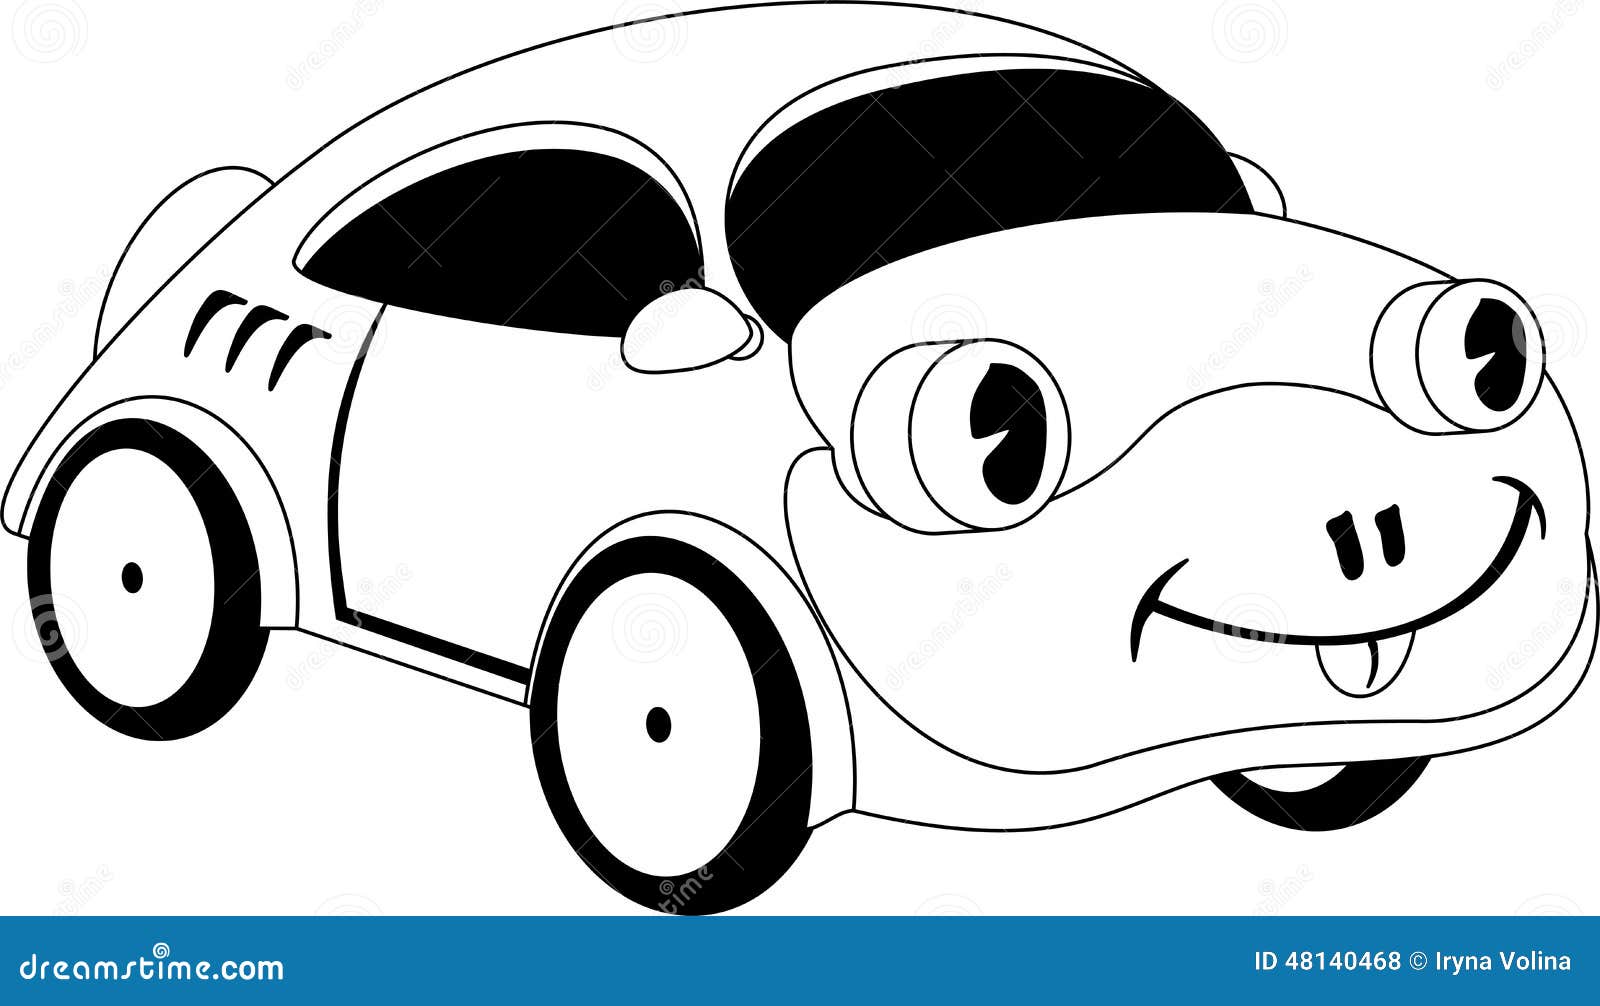 Cartoon car stock vector. Illustration of cartoon, symbol - 48140468